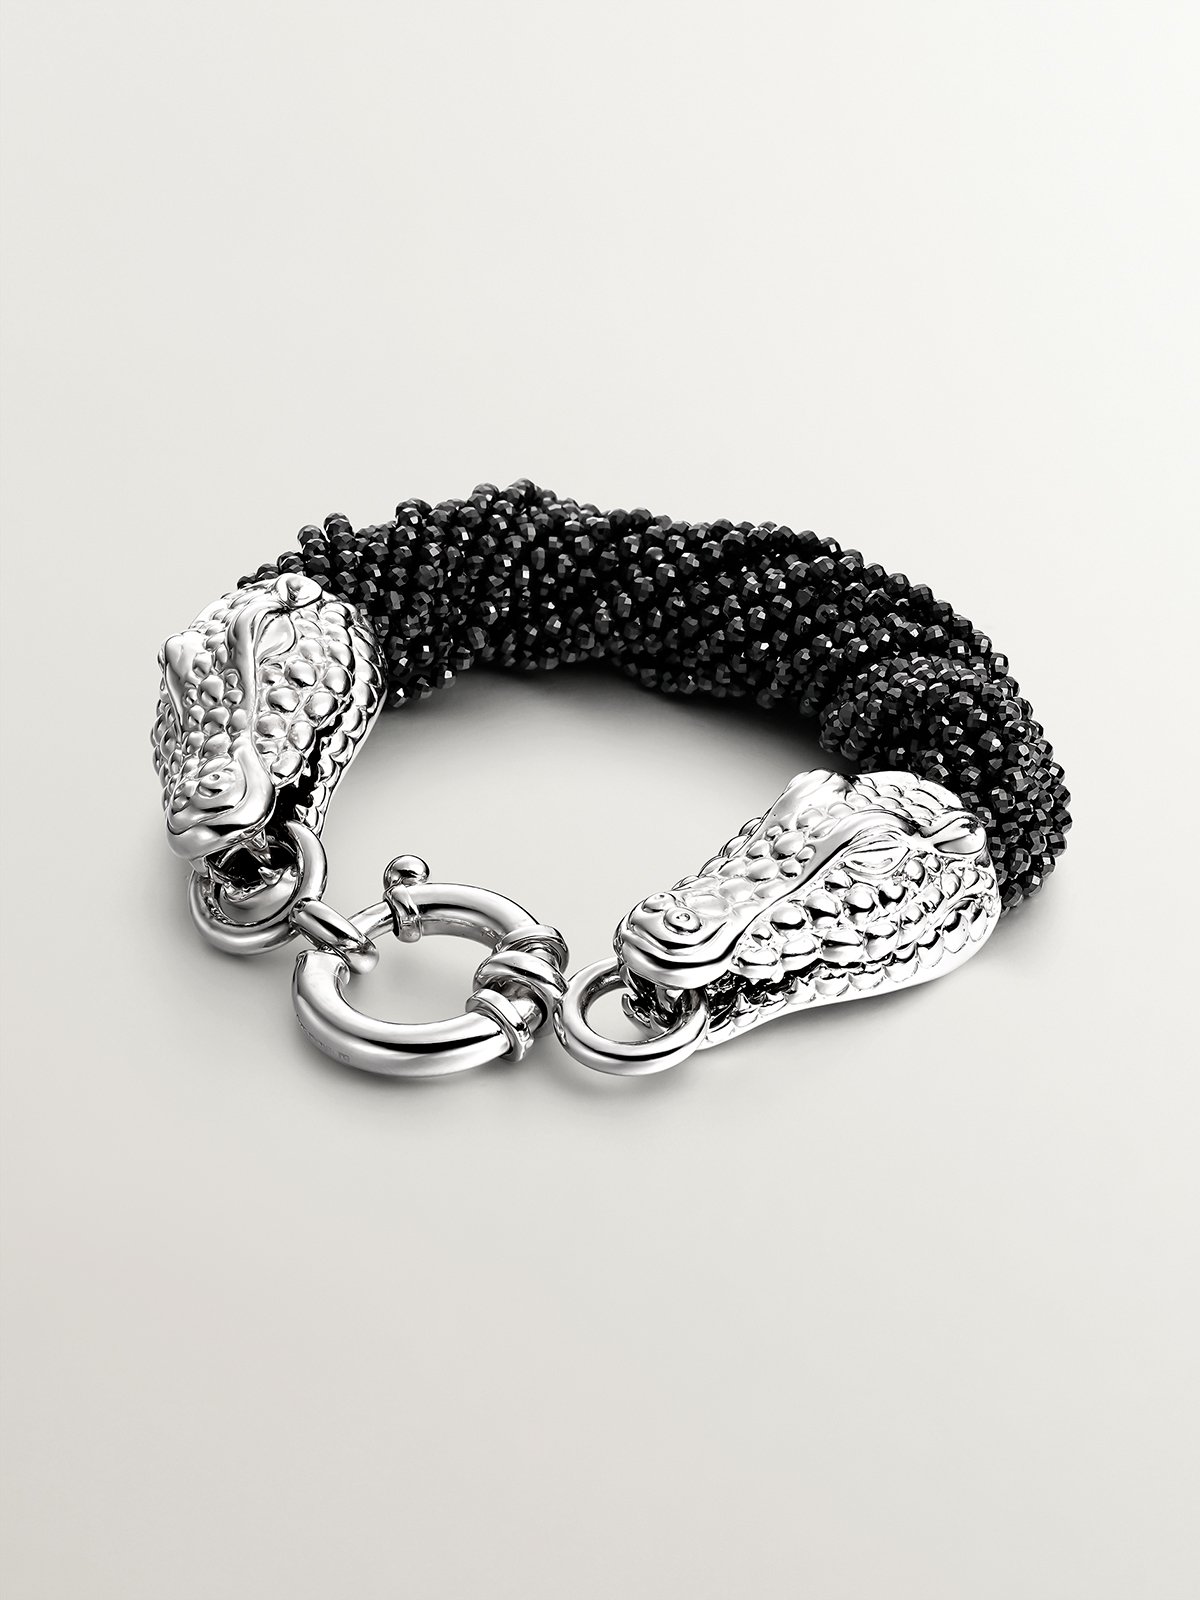 925 silver bracelet and black spinelas shaped like crocodile heads